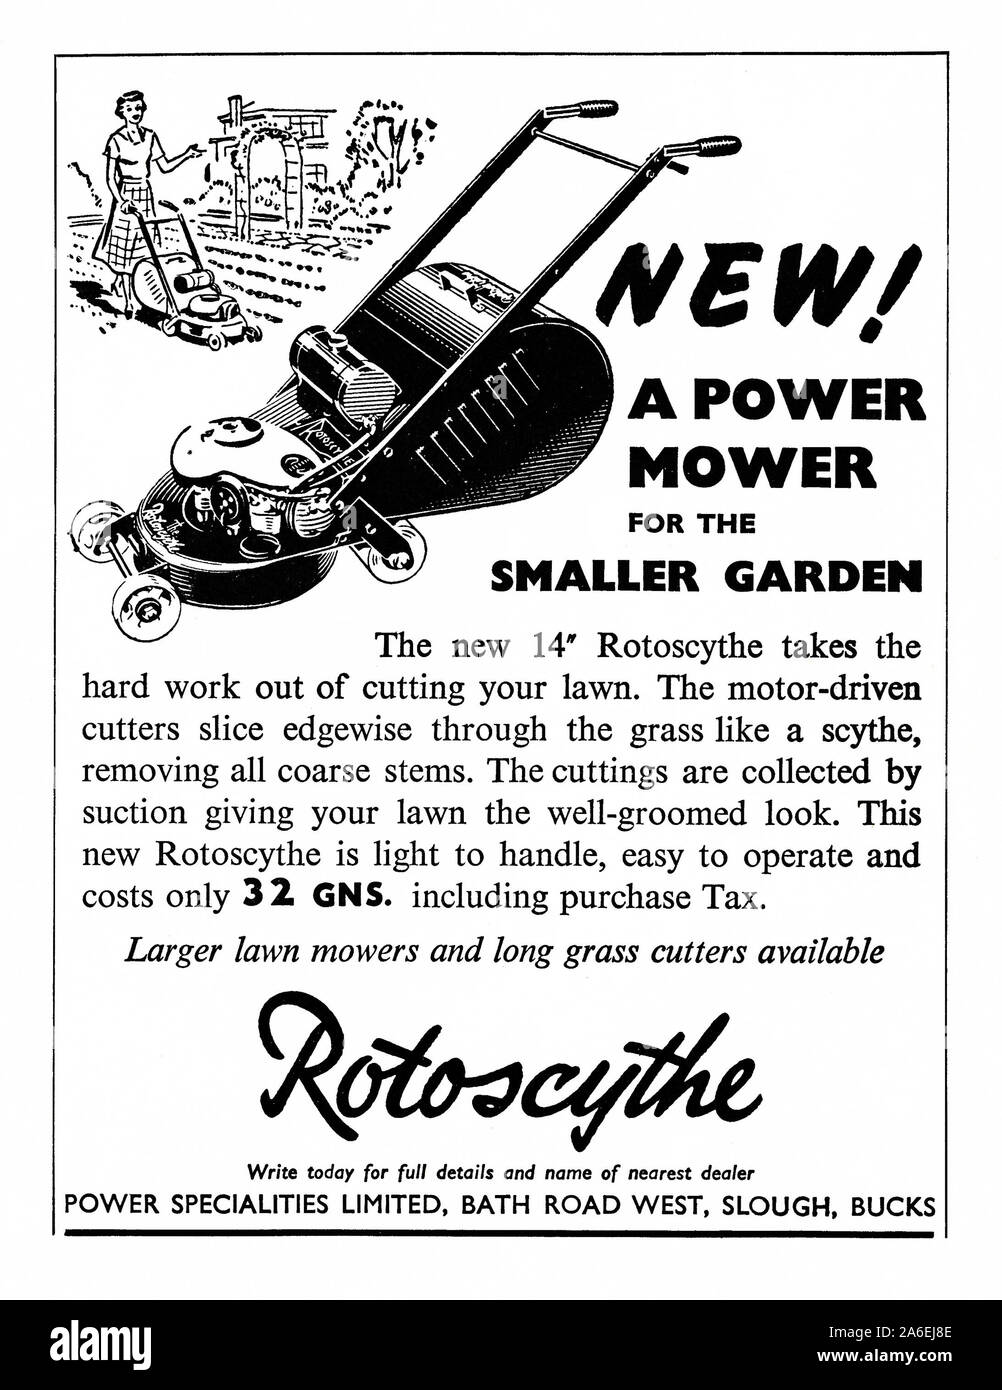 Annuncio per un Rotoscythe, un piccolo giardino di potenza falciatrice, 1951. La figura mostra una donna falciare il suo prato - aiutando a sottolineare la leggerezza della falciatrice. Il British Rotoscythe fu prodotto per la prima volta da specialità di potenza di Slough, Buckinghamshire, Inghilterra, Regno Unito. Alcune delle primissime Rotoscythes erano alimentati elettricamente ma motorizzate a benzina era la norma. Foto Stock